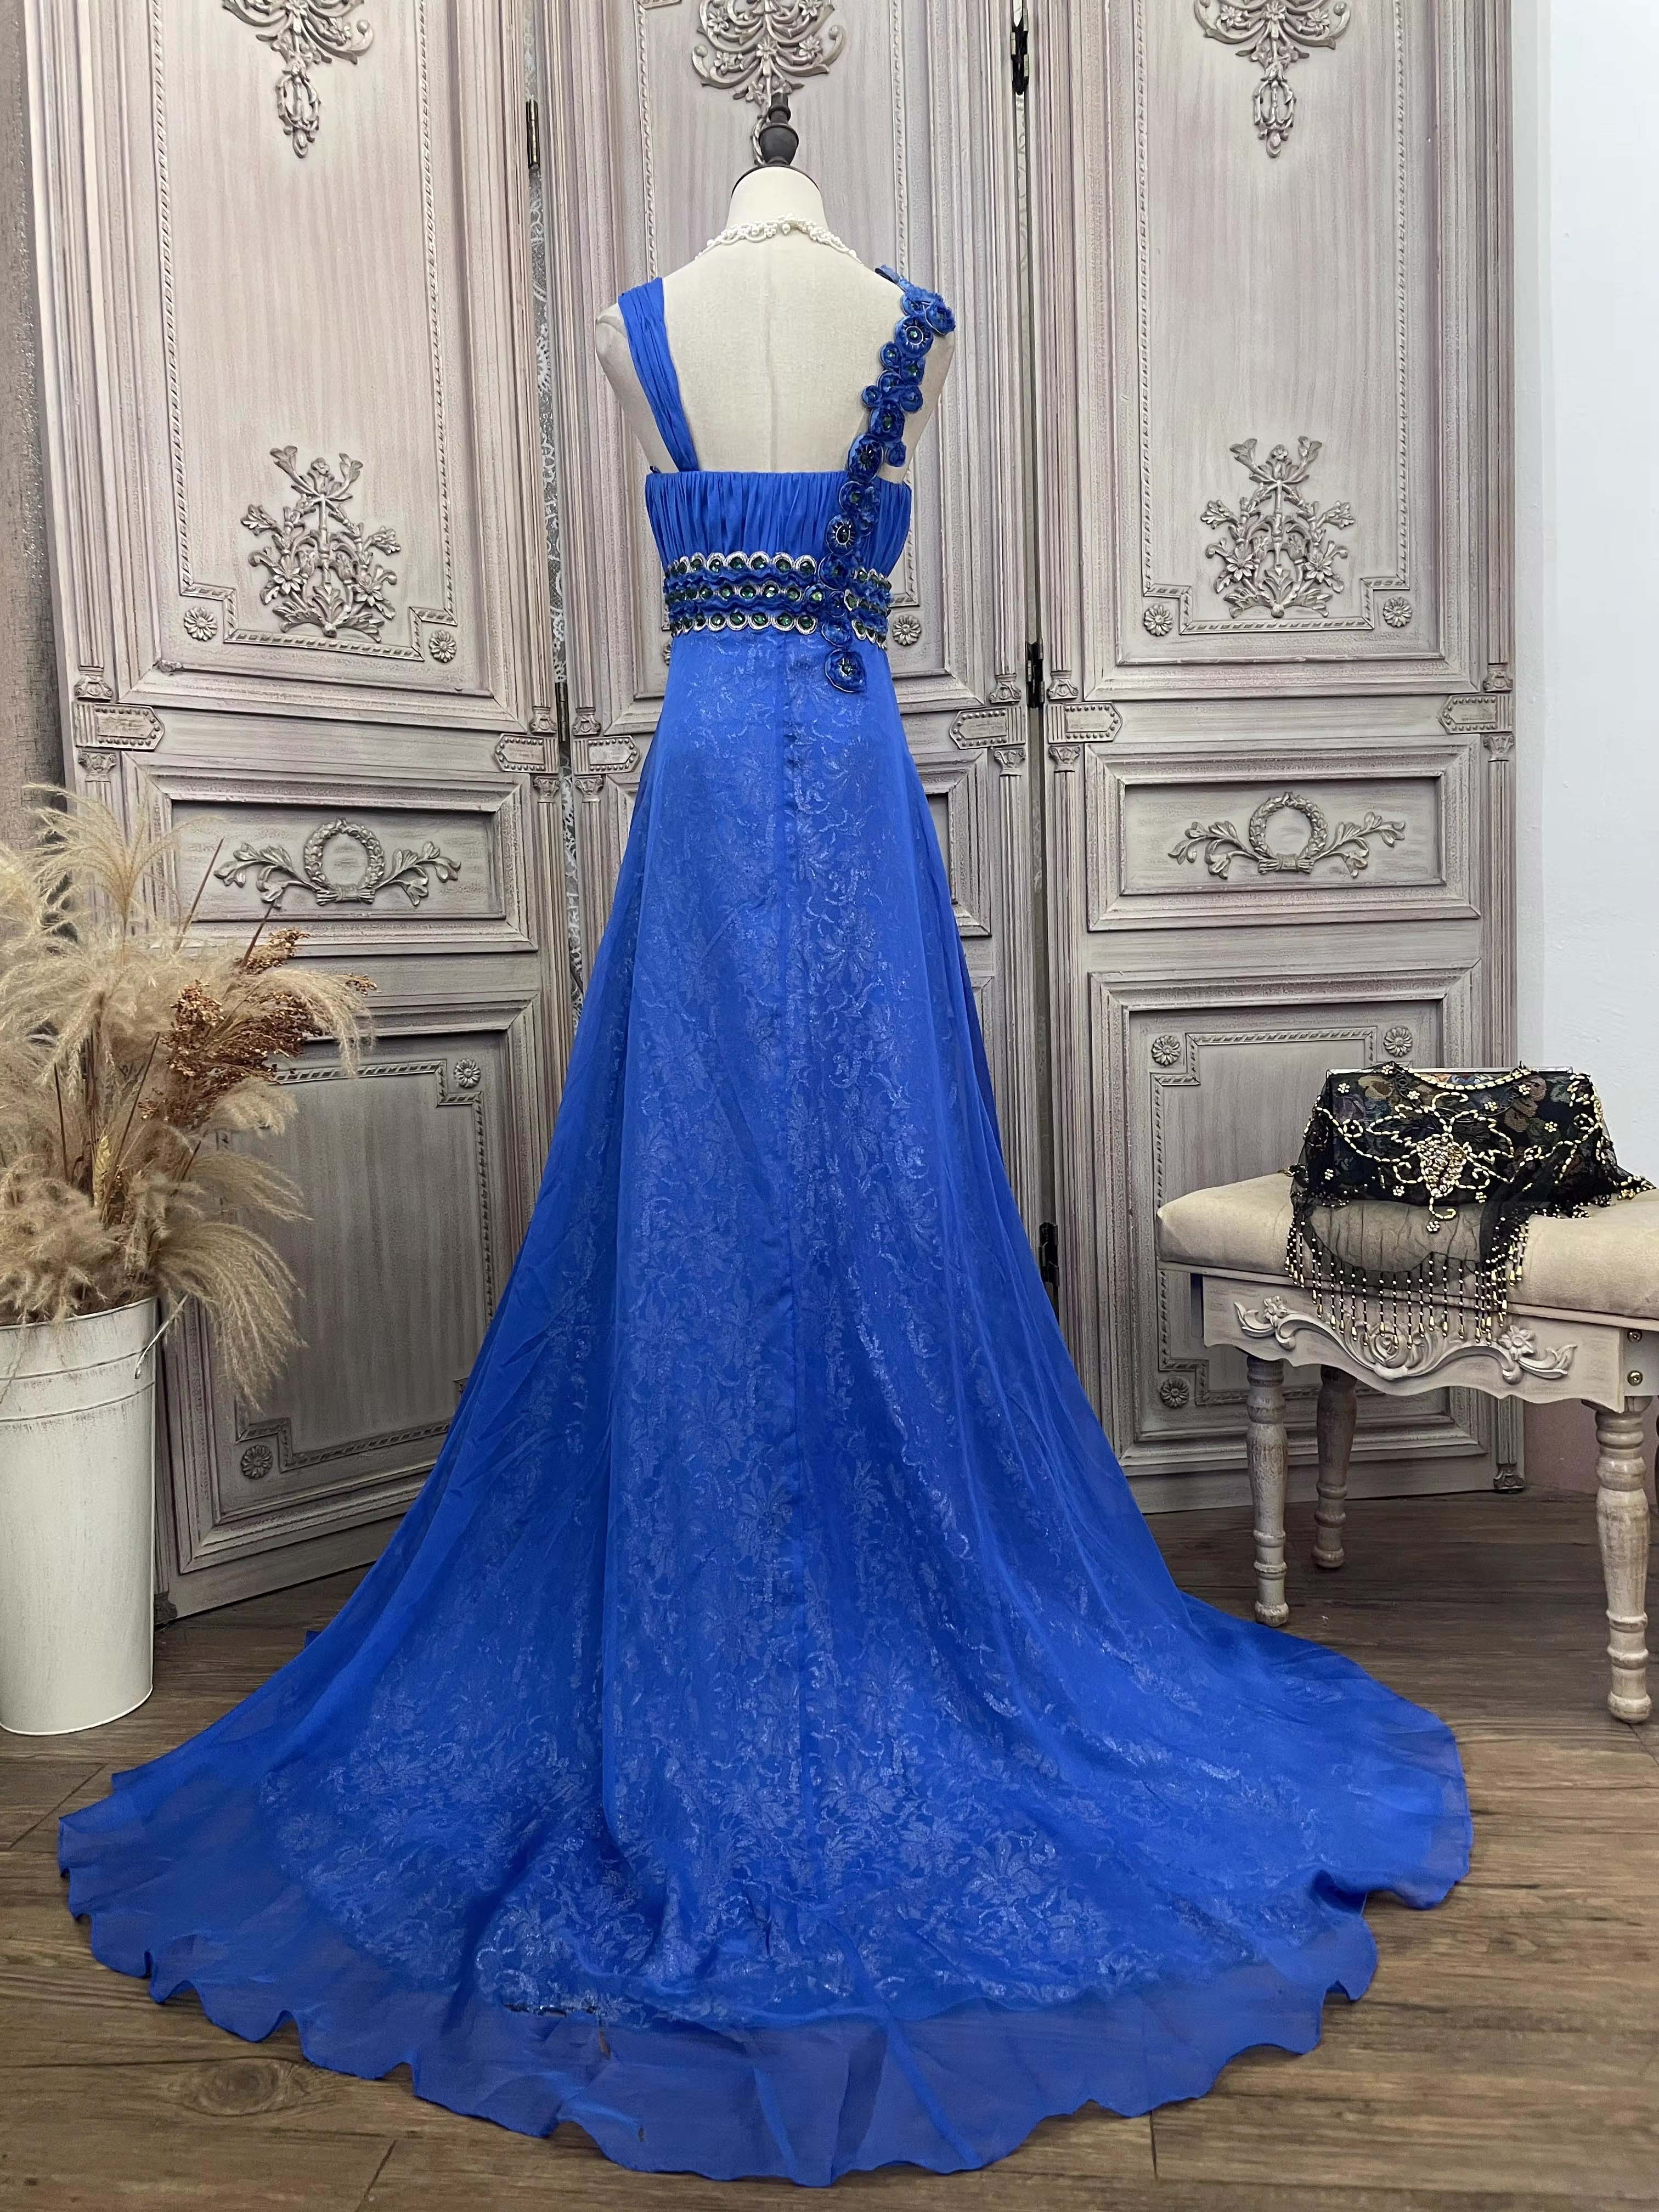 تطريز فستان طويل أنيق مشهور من مصنع السيدات (1)